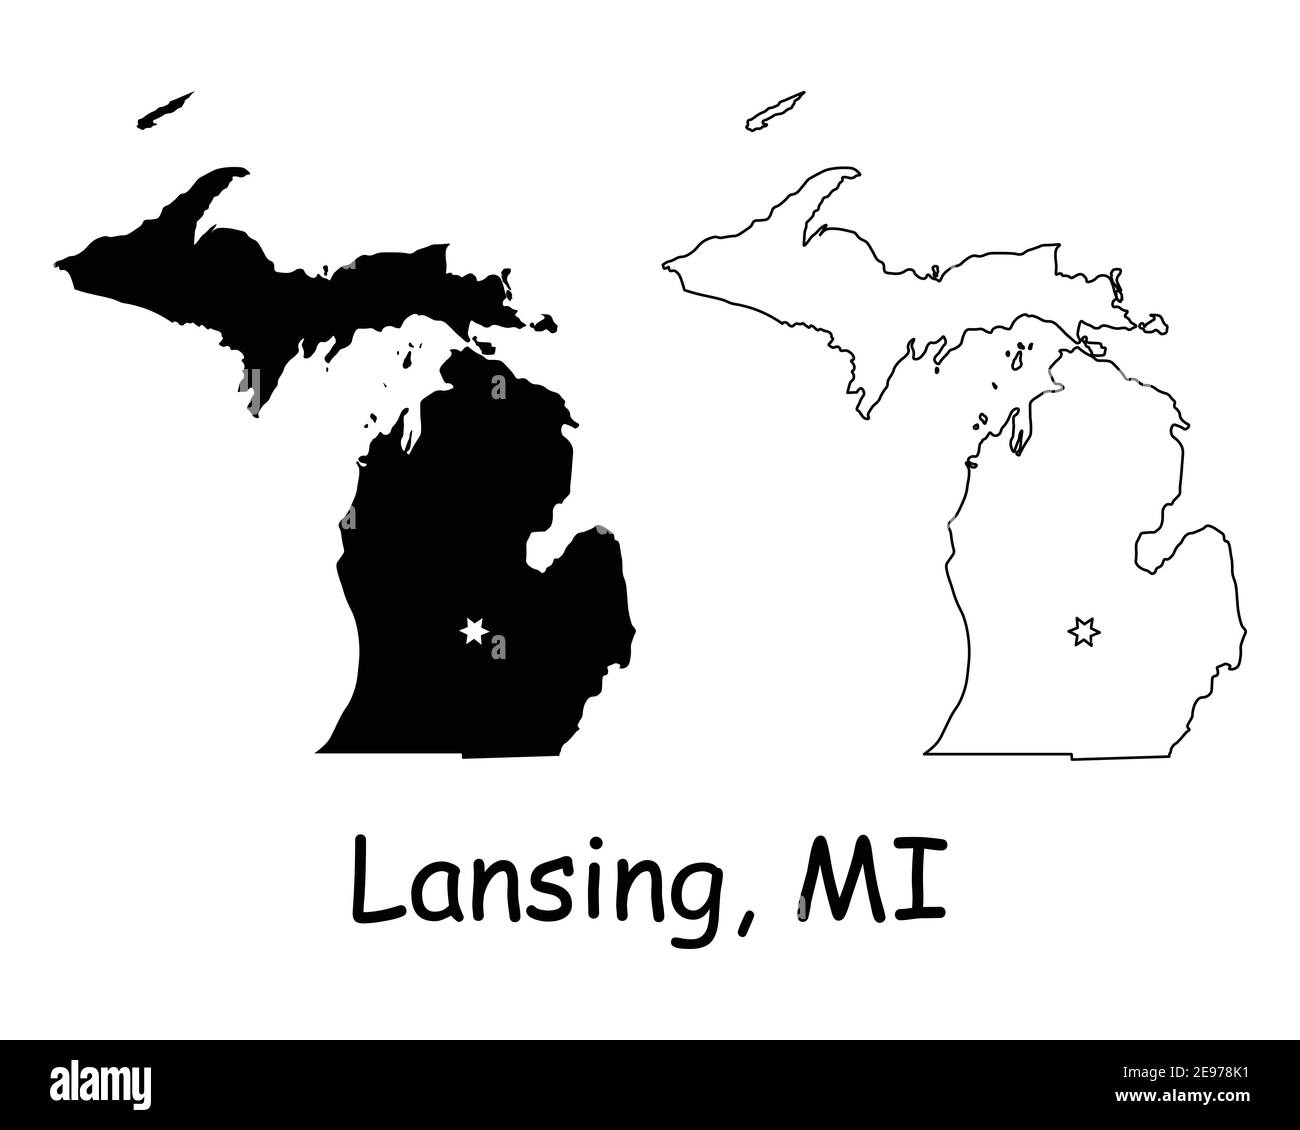 Michigan MI State Map USA mit Capital City Star in Lansing. Schwarze Silhouette und Umriss isoliert auf weißem Hintergrund. EPS-Vektor Stock Vektor